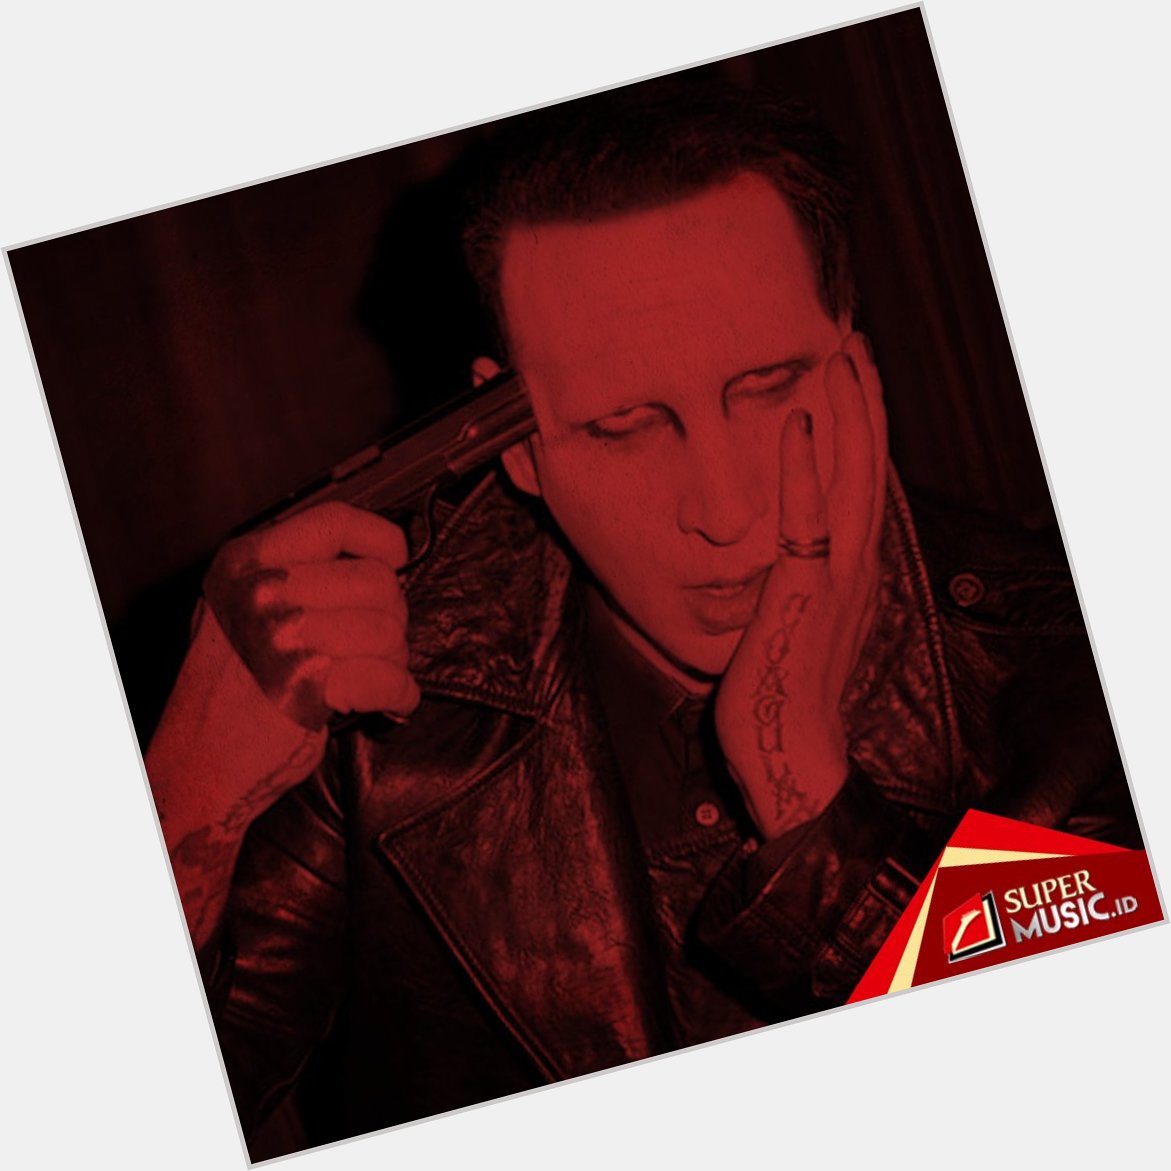  Brian Hugh Warner lahir hari ini, 48 tahun silam. Happy Birthday, Marilyn Manson! 